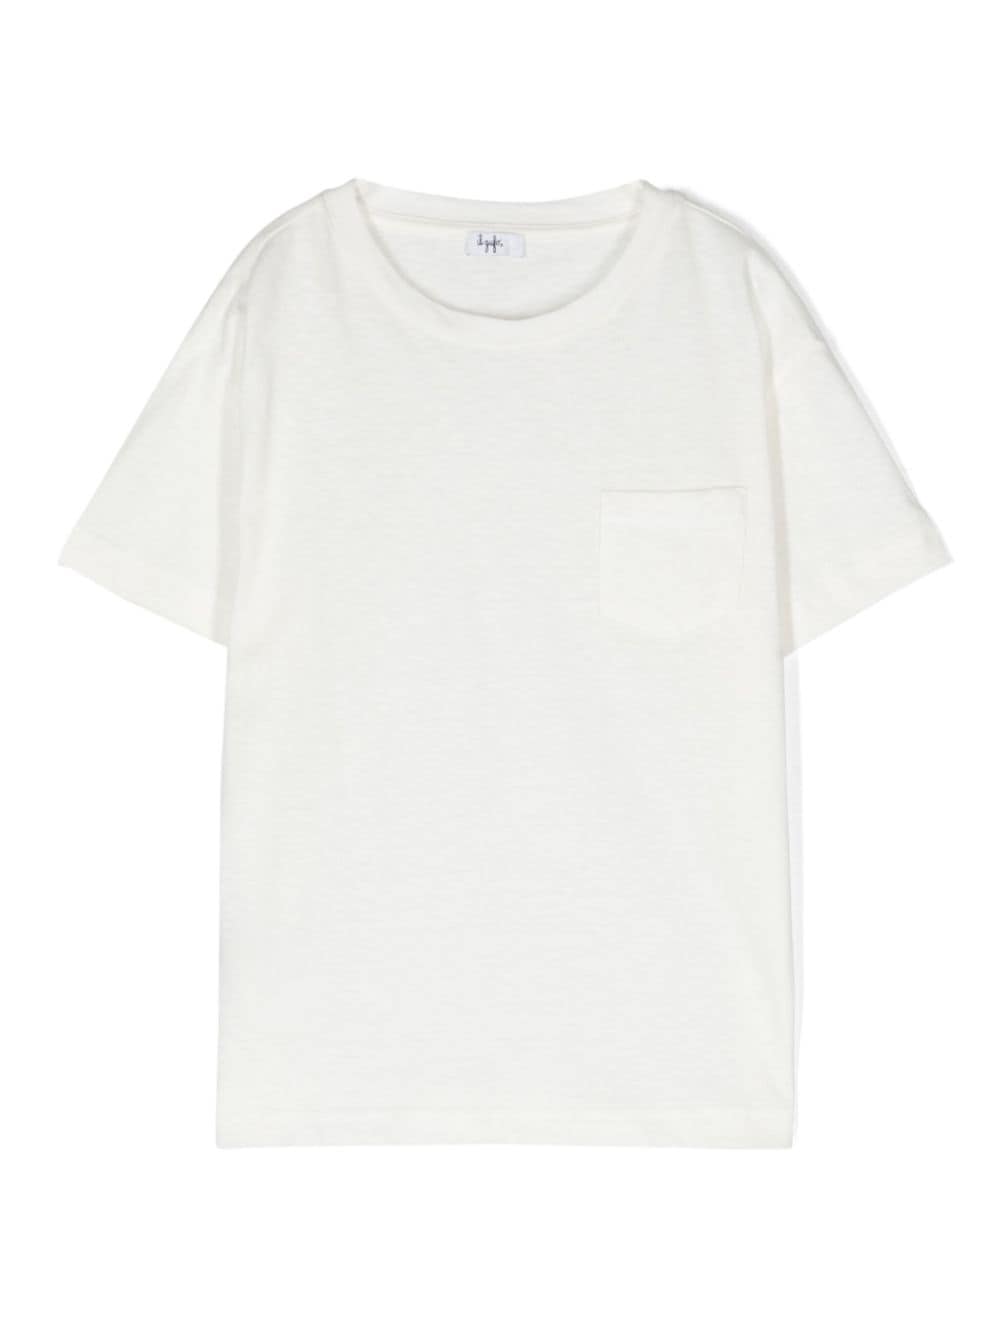 Il Gufo Kids' Lightweight Cotton-blend T-shirt In White